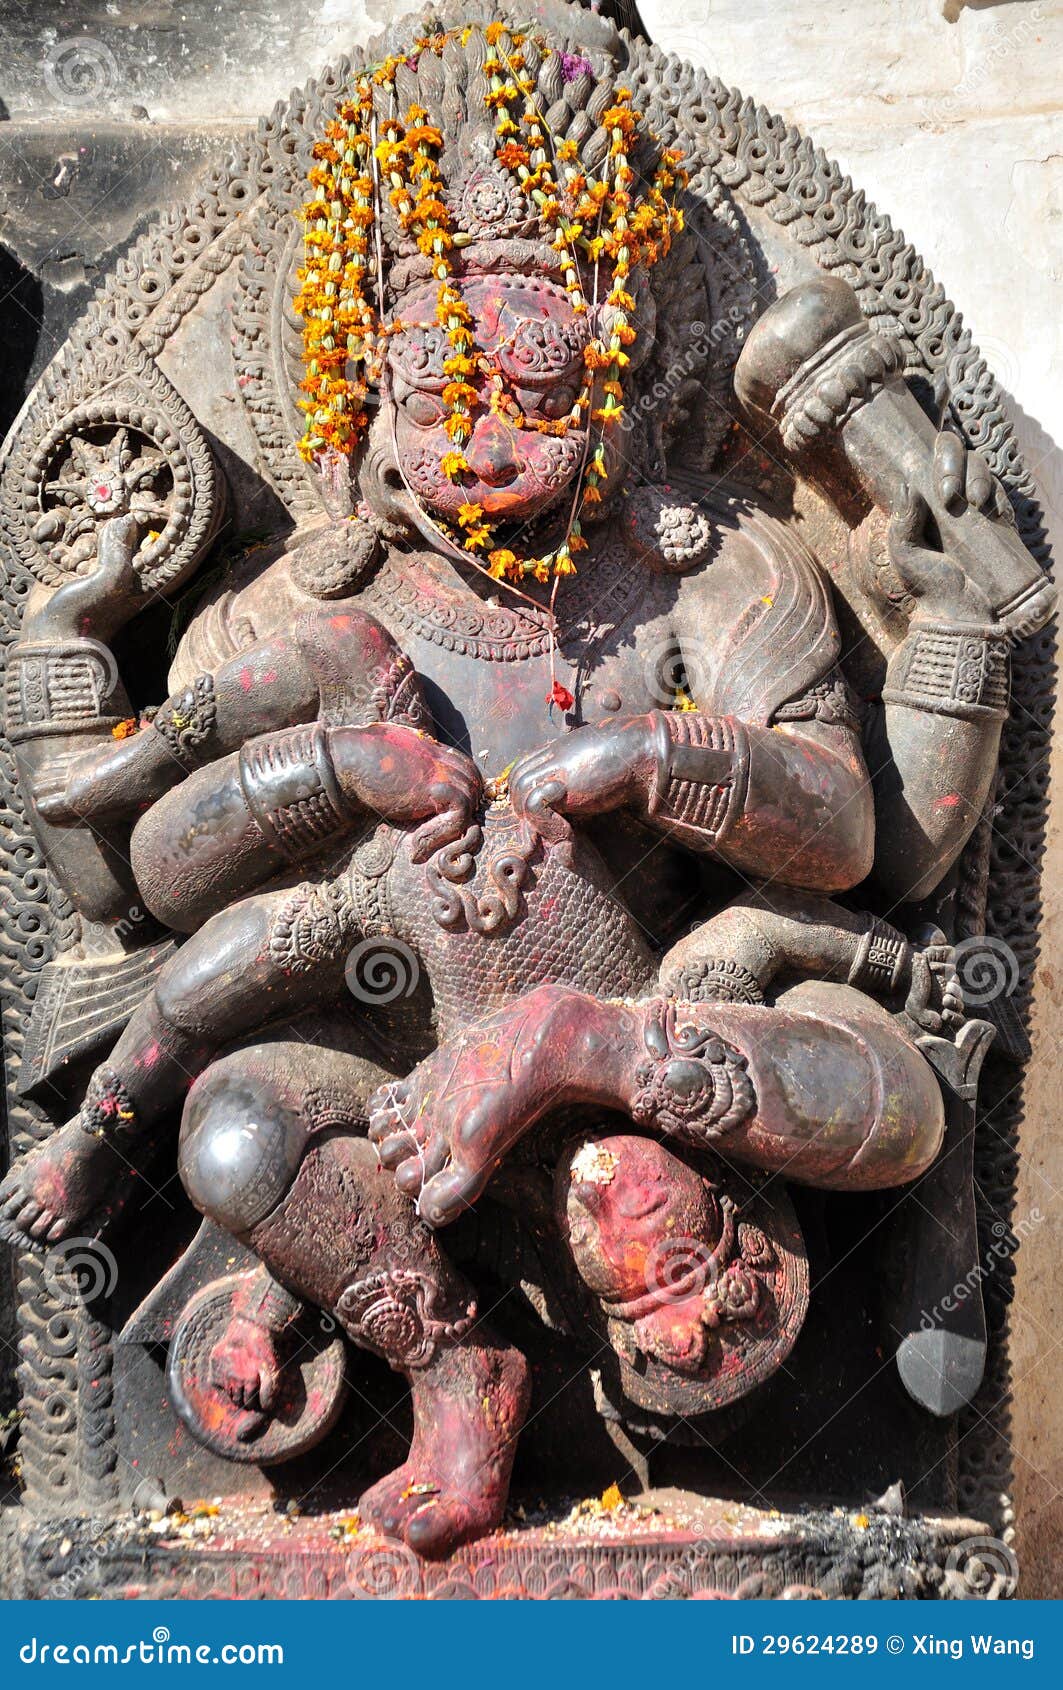 hindu deity at bhaktapur durbar square